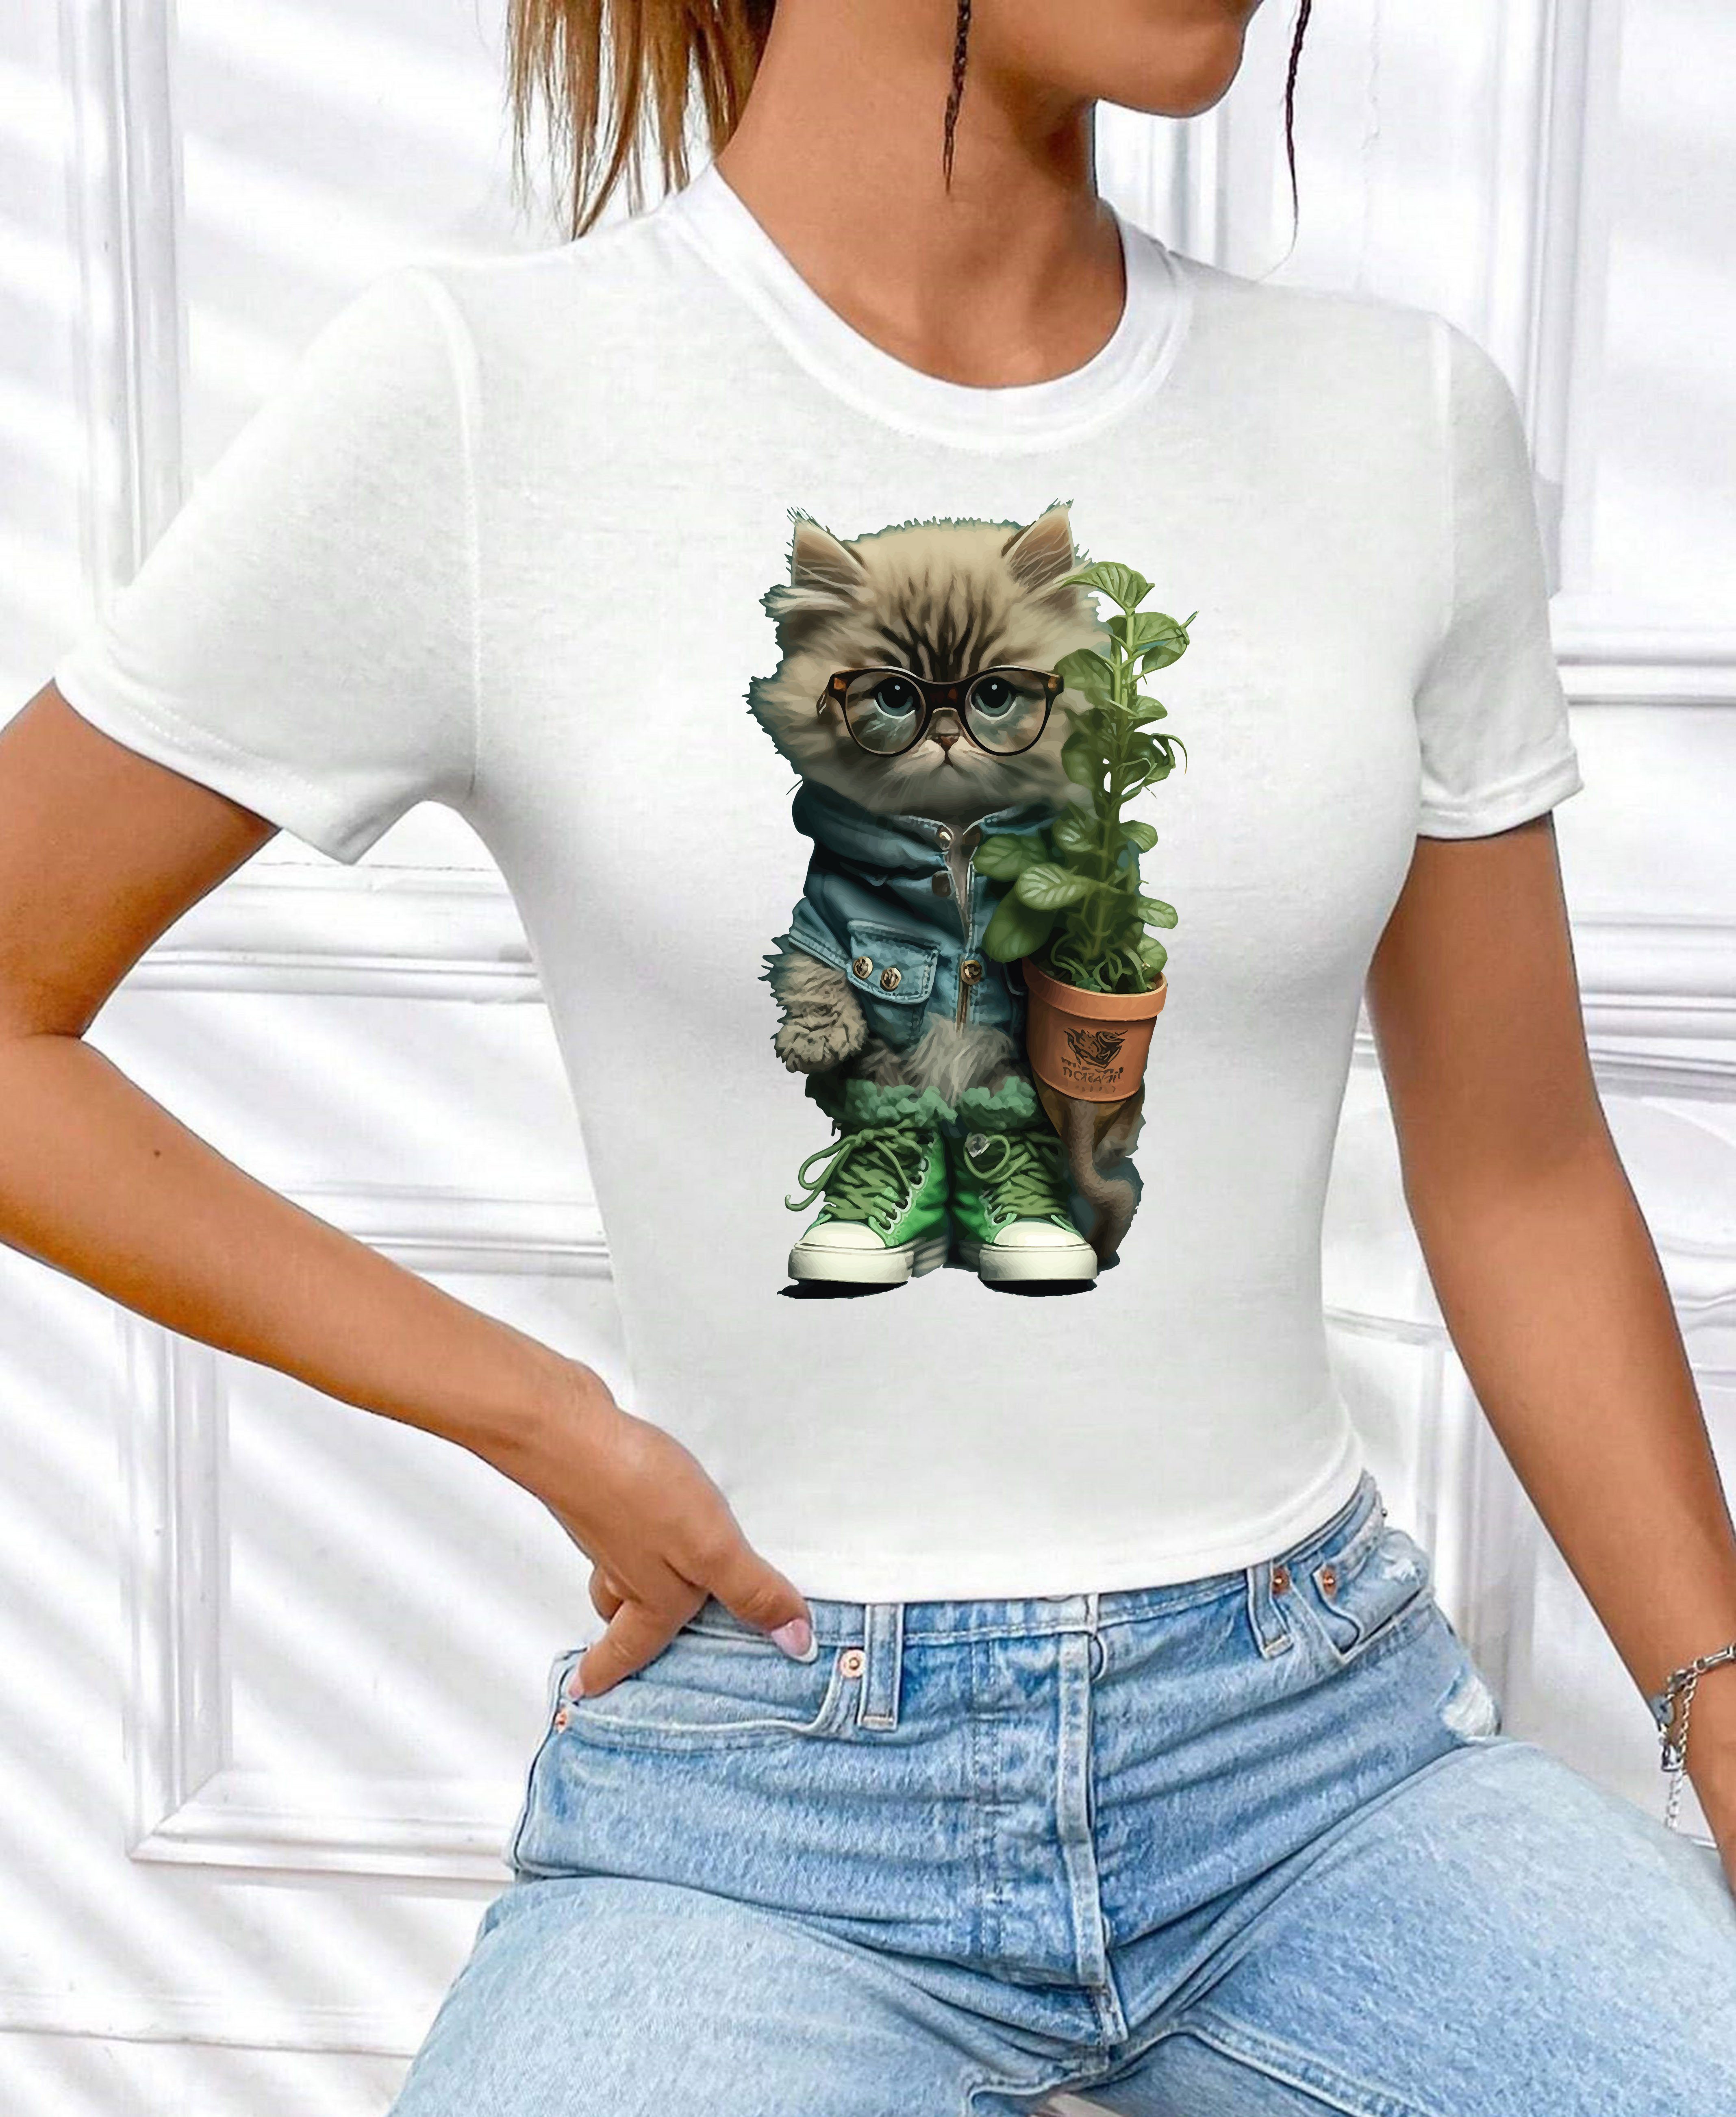 Unifarbe, Garten Damen Blume aus in Katze" kurzarm Rundhals mit Baumwolle, Print Top Freizeit Shirt T-Shirt Weiß_1 RMK lizenziertem "Cat